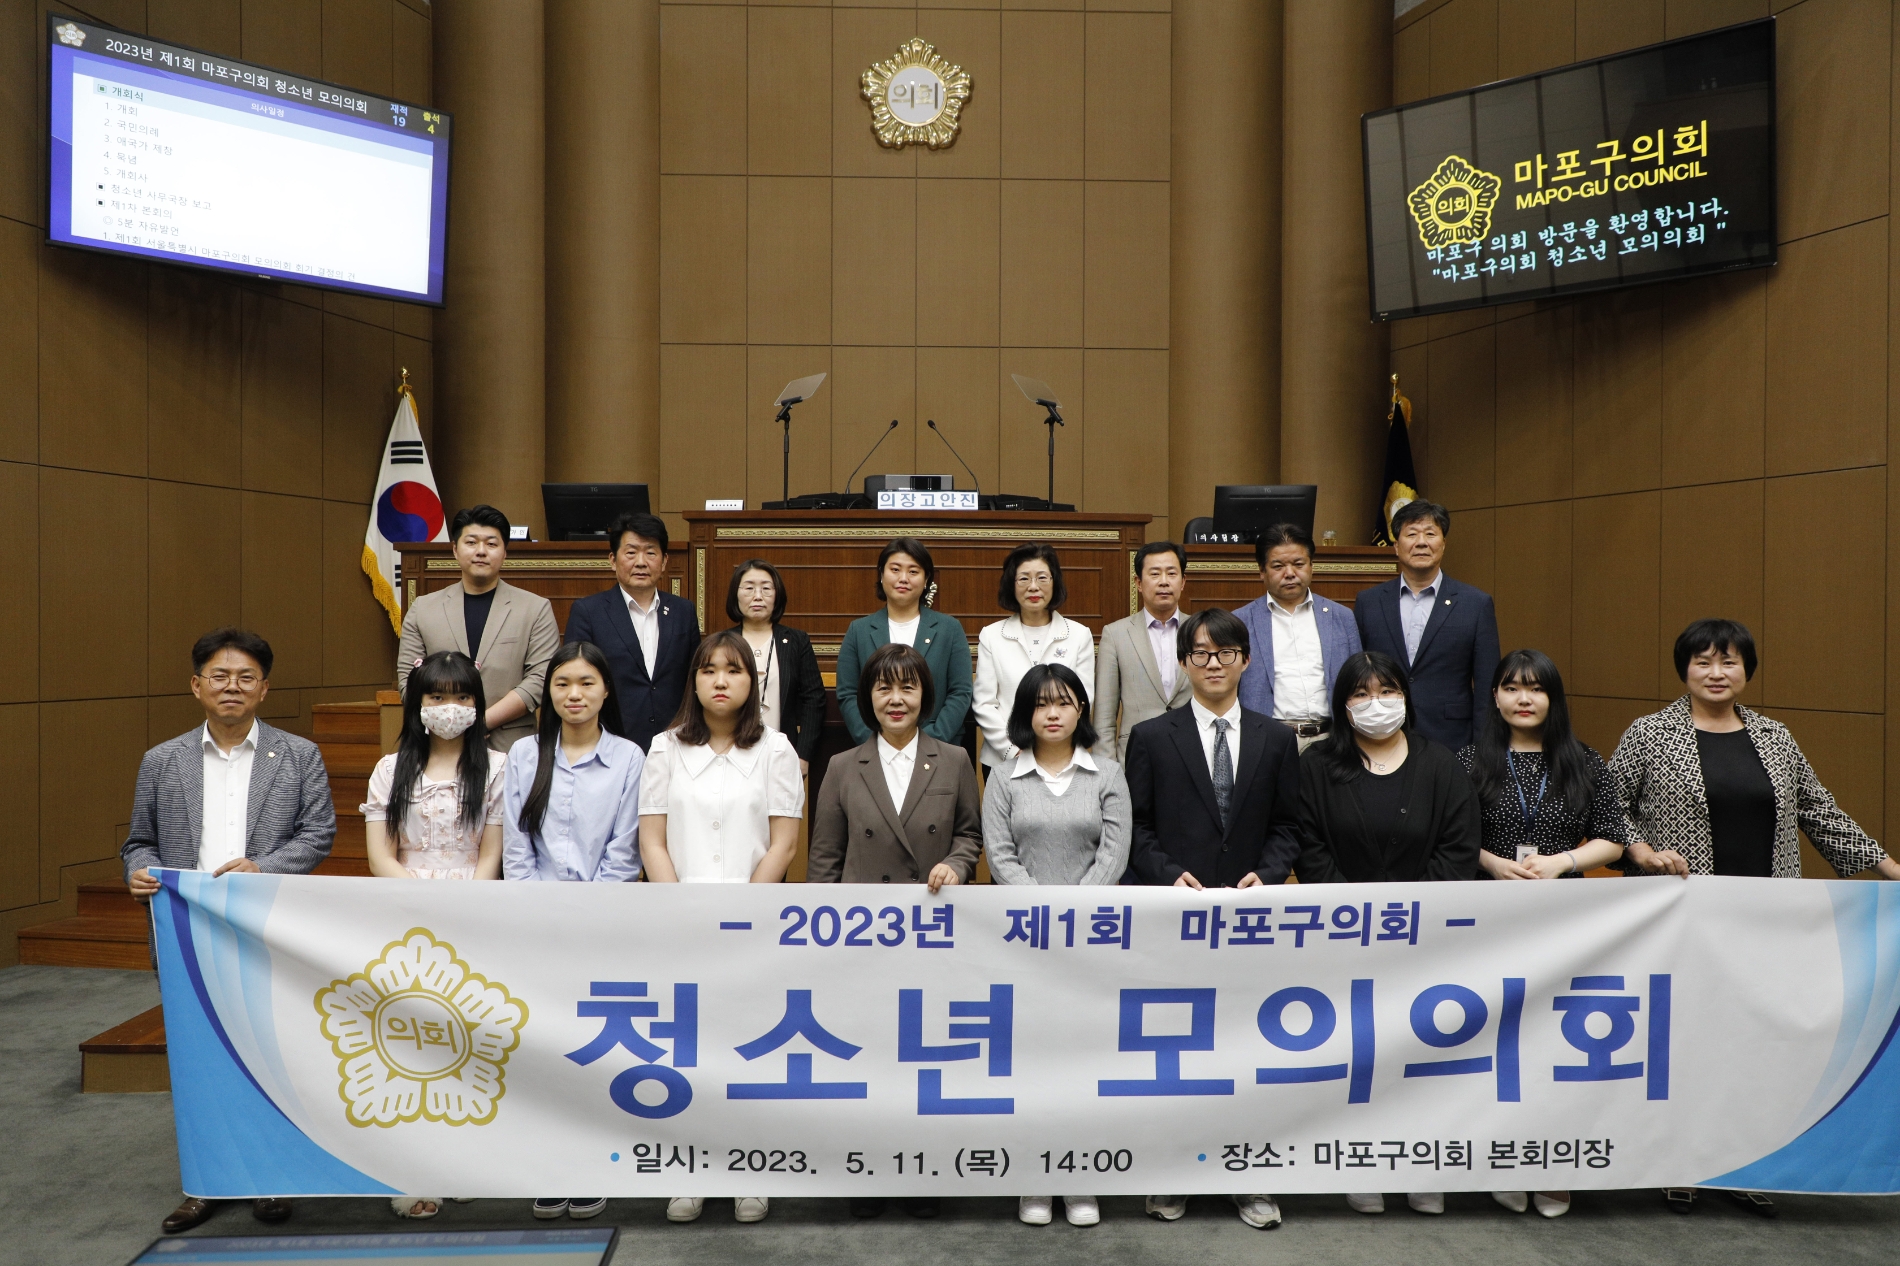 김영미 마포구의장을 비롯한 의원들이 모의의회에 참석한 청소년들과 기념촬영을 하는 모습./사진제공=마포구의회